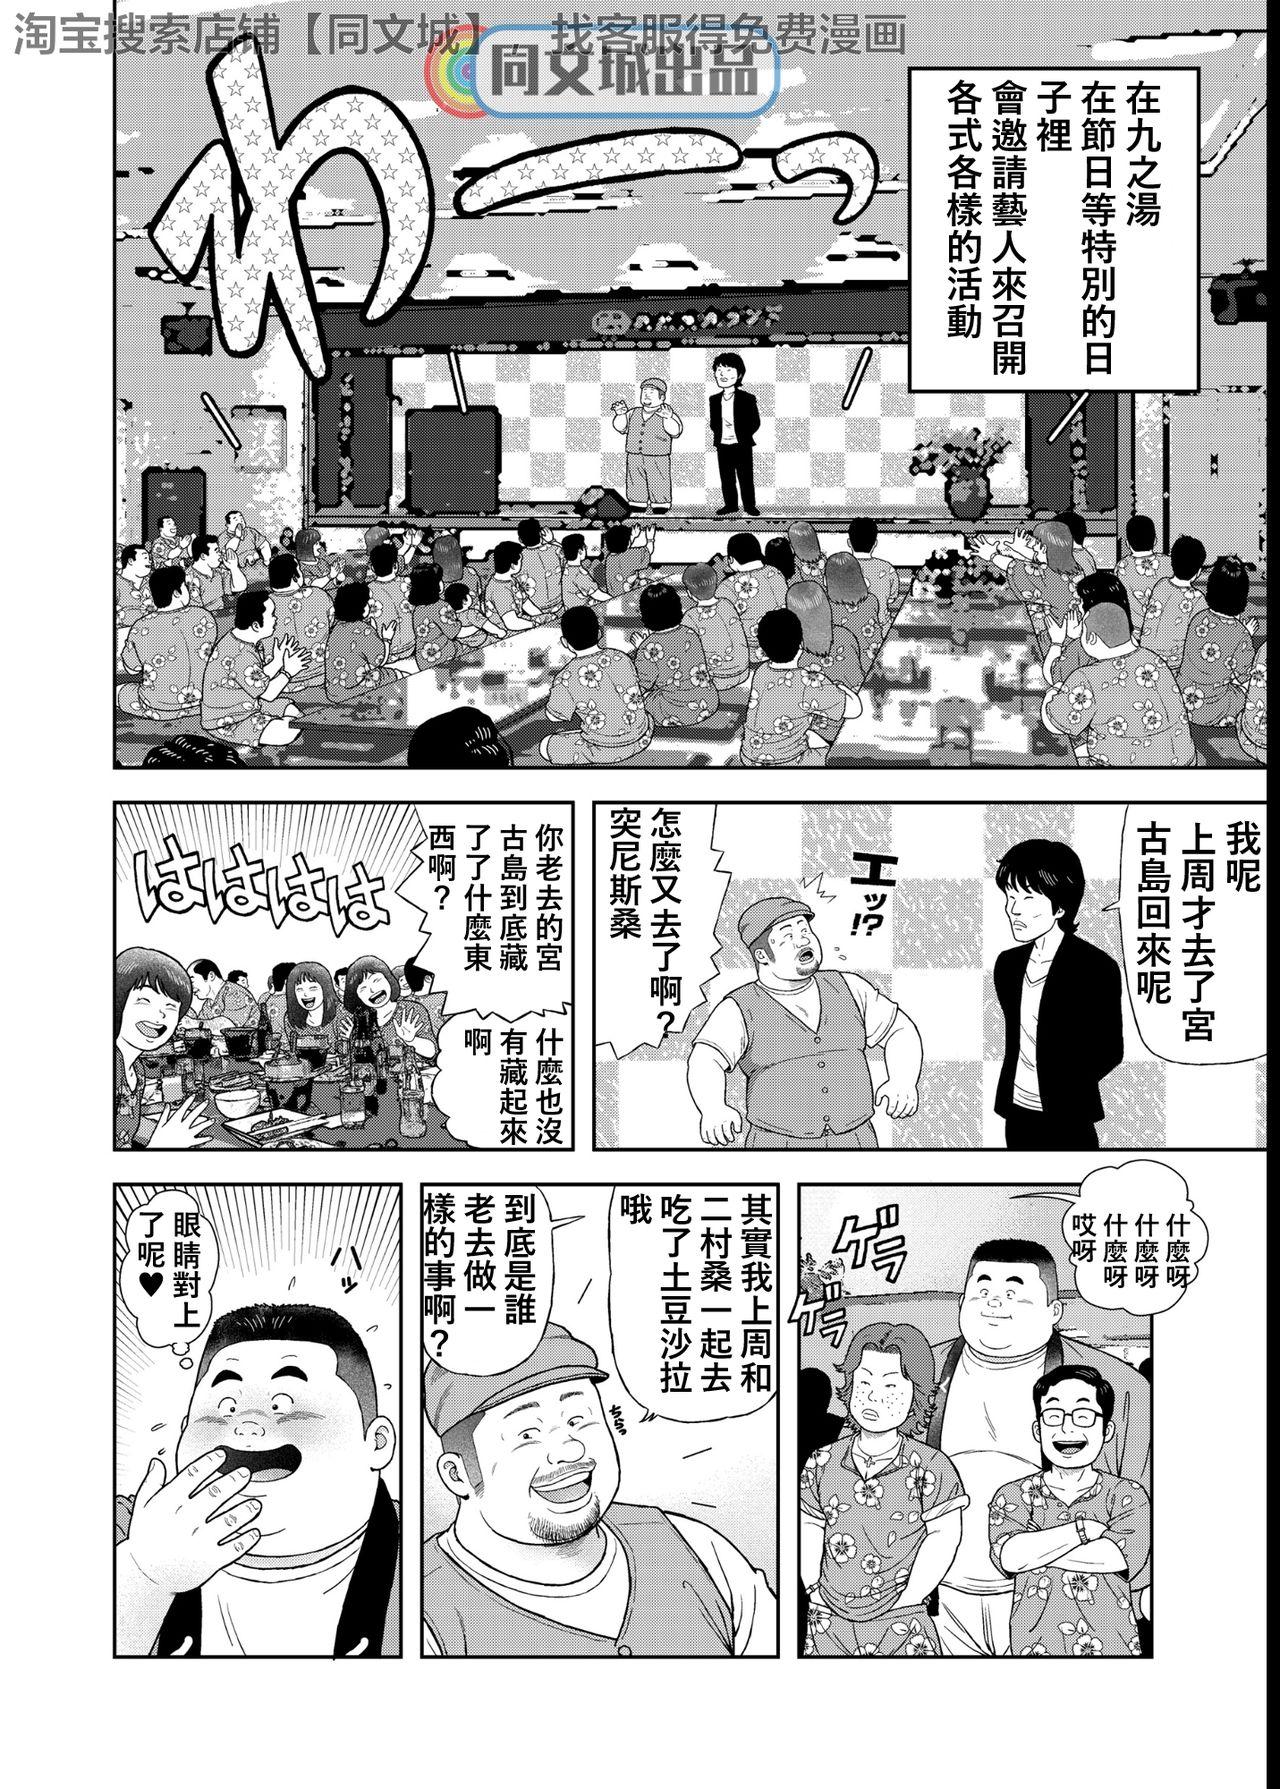 Gang Kunoyu Yonhatsume Geinin no Saga - Original Homo - Page 2